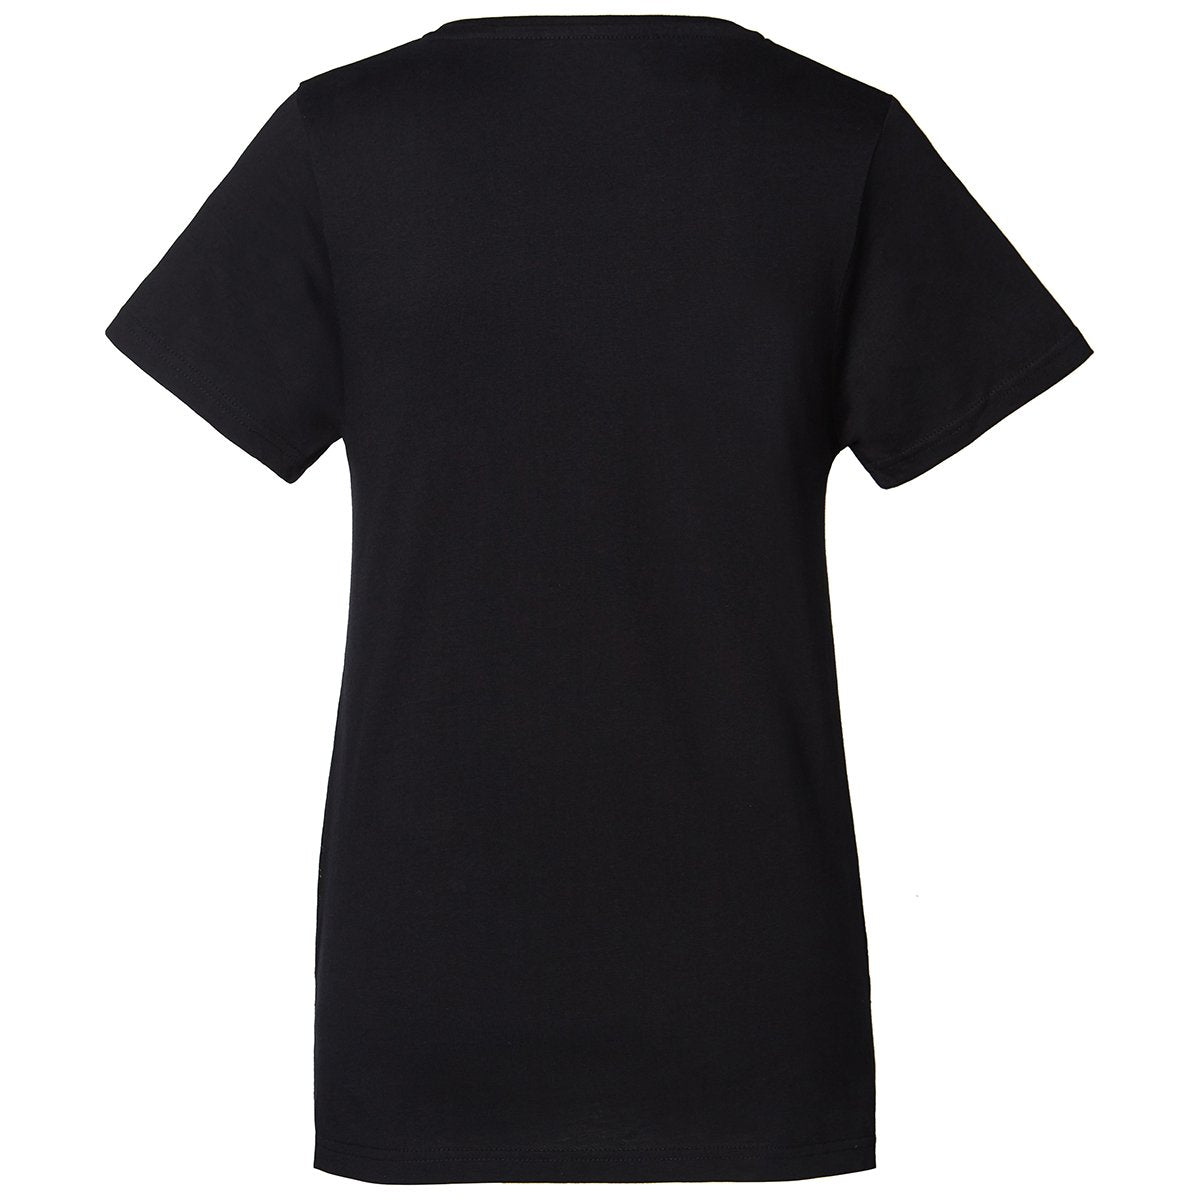 Camiseta Yanil mujer negro - Imagen 3